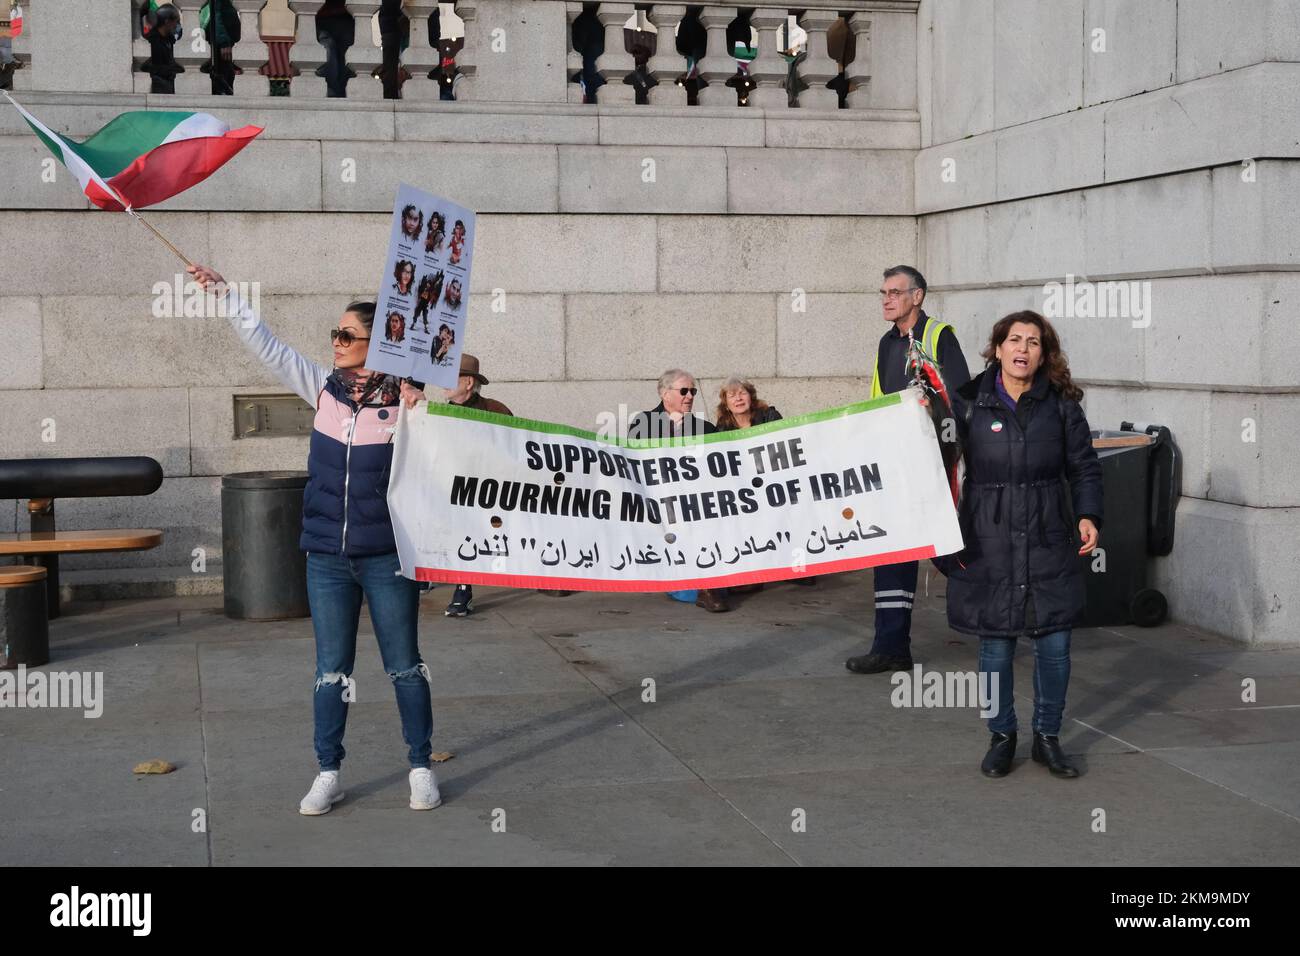 Trafalgar Square, Londres, Royaume-Uni. 26th novembre 2022. Manifestations à Londres contre la République islamique d'Iran. Crédit : Matthew Chattle/Alay Live News Banque D'Images